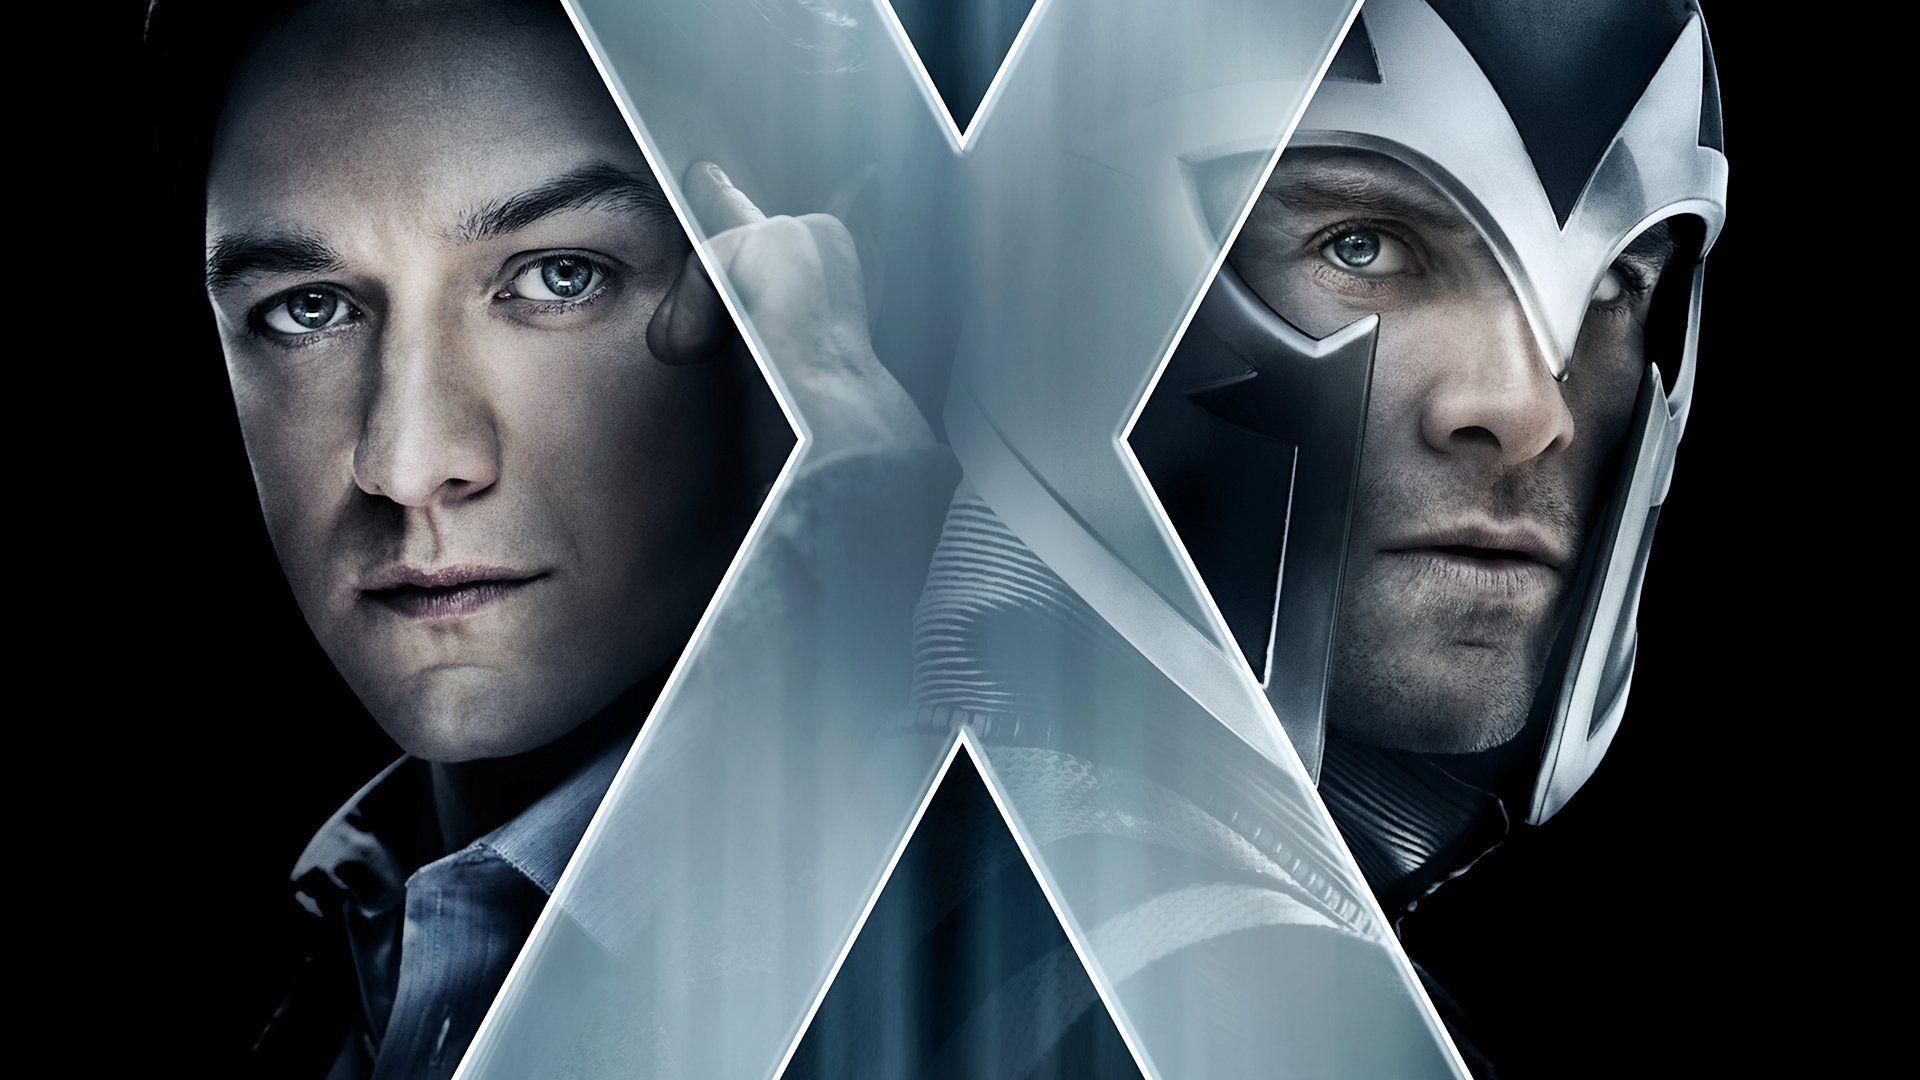 X Men: First Class HD Wallpaper